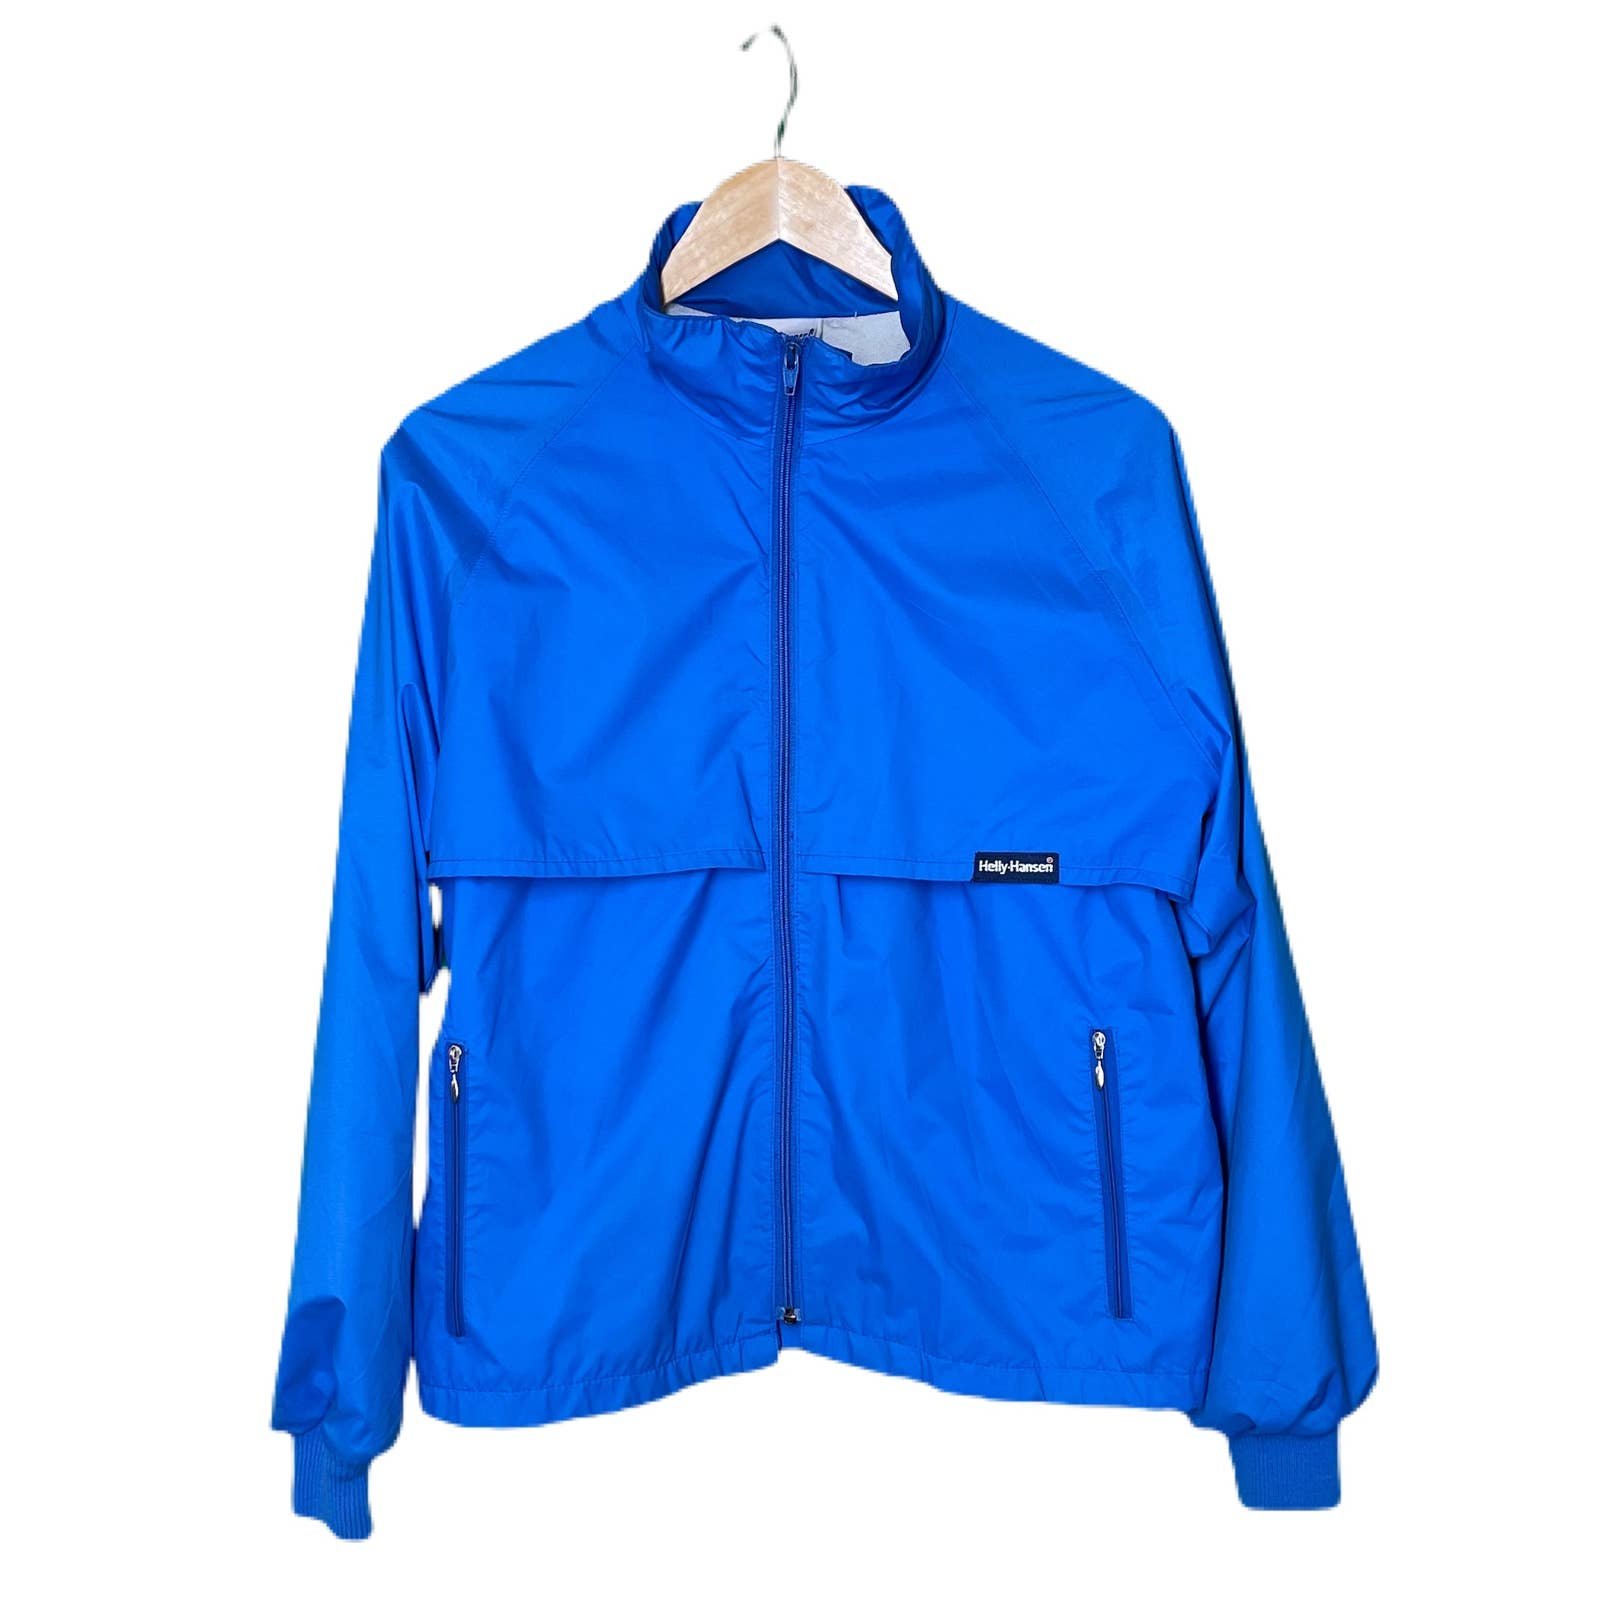 Comfortable Helly Hansen vintage windbreaker jacket - Medium - 90s Pjqr0PftN no tax